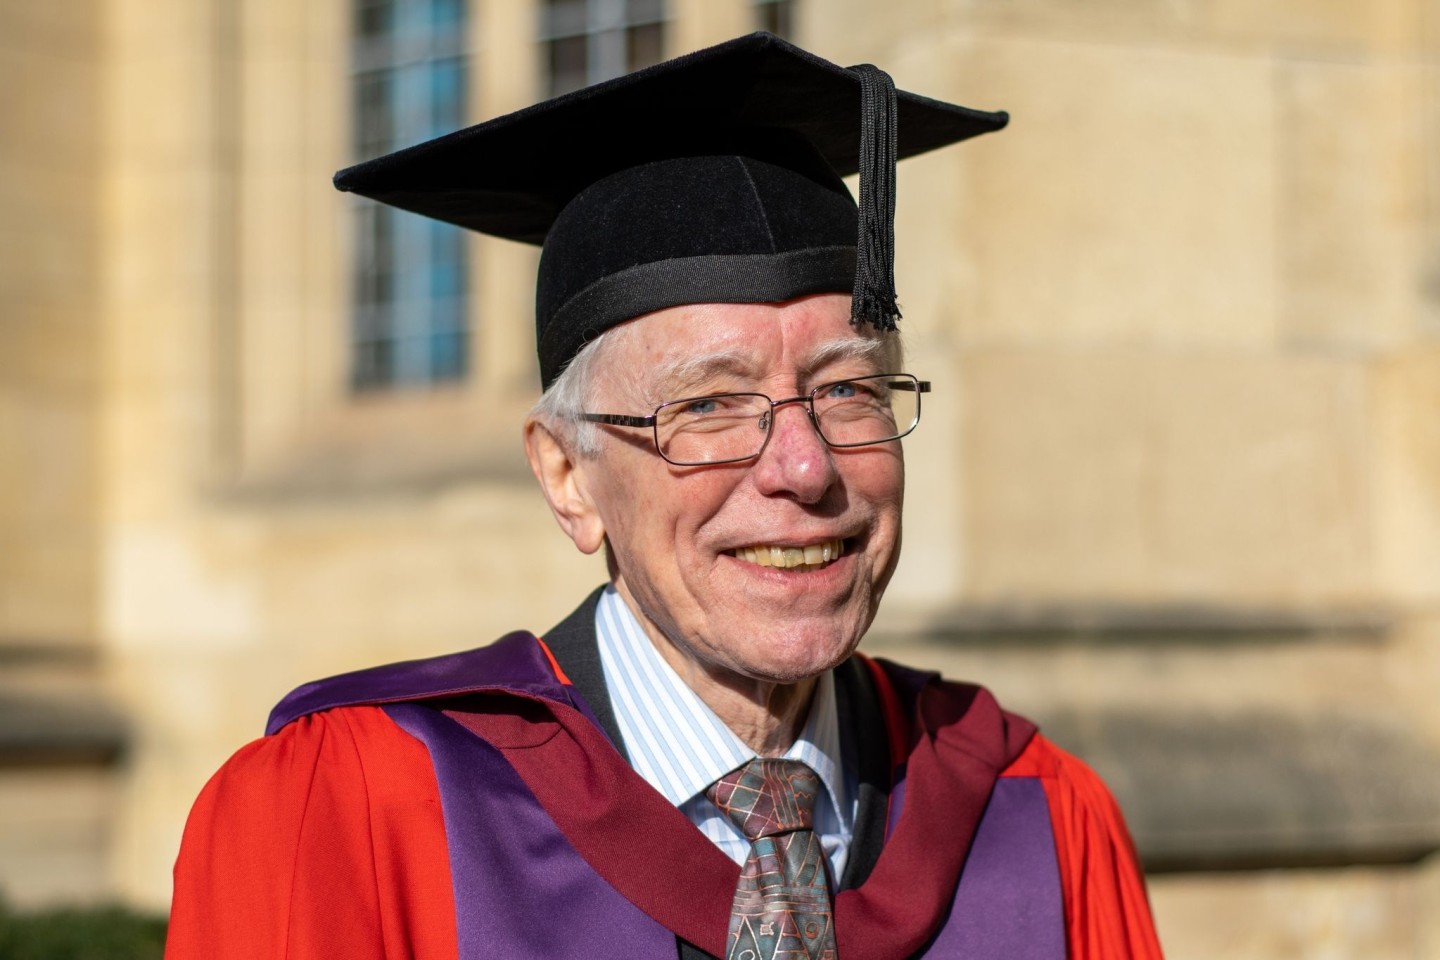 Dr. Nick Axten, 76, der 1970 ein Doktorat begann, und nach gut 50 Jahren seinen Abschluss gemacht hat.